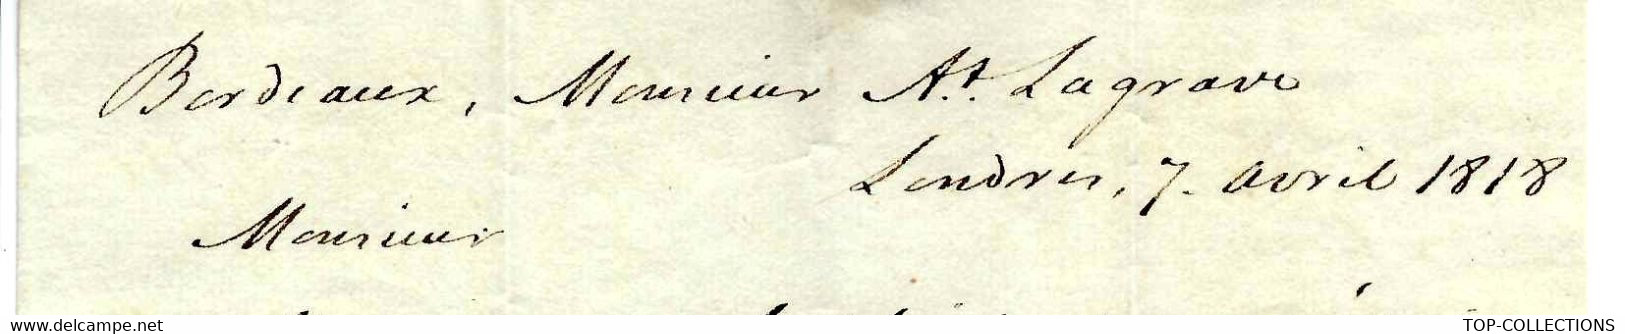 1818 PROTESTANTISME NECKER  COMPAGNIE DES INDES  COMMERCE NEGOCE INTERNATIONAL  Par James Bourdieu & Sons à Londres - Documents Historiques